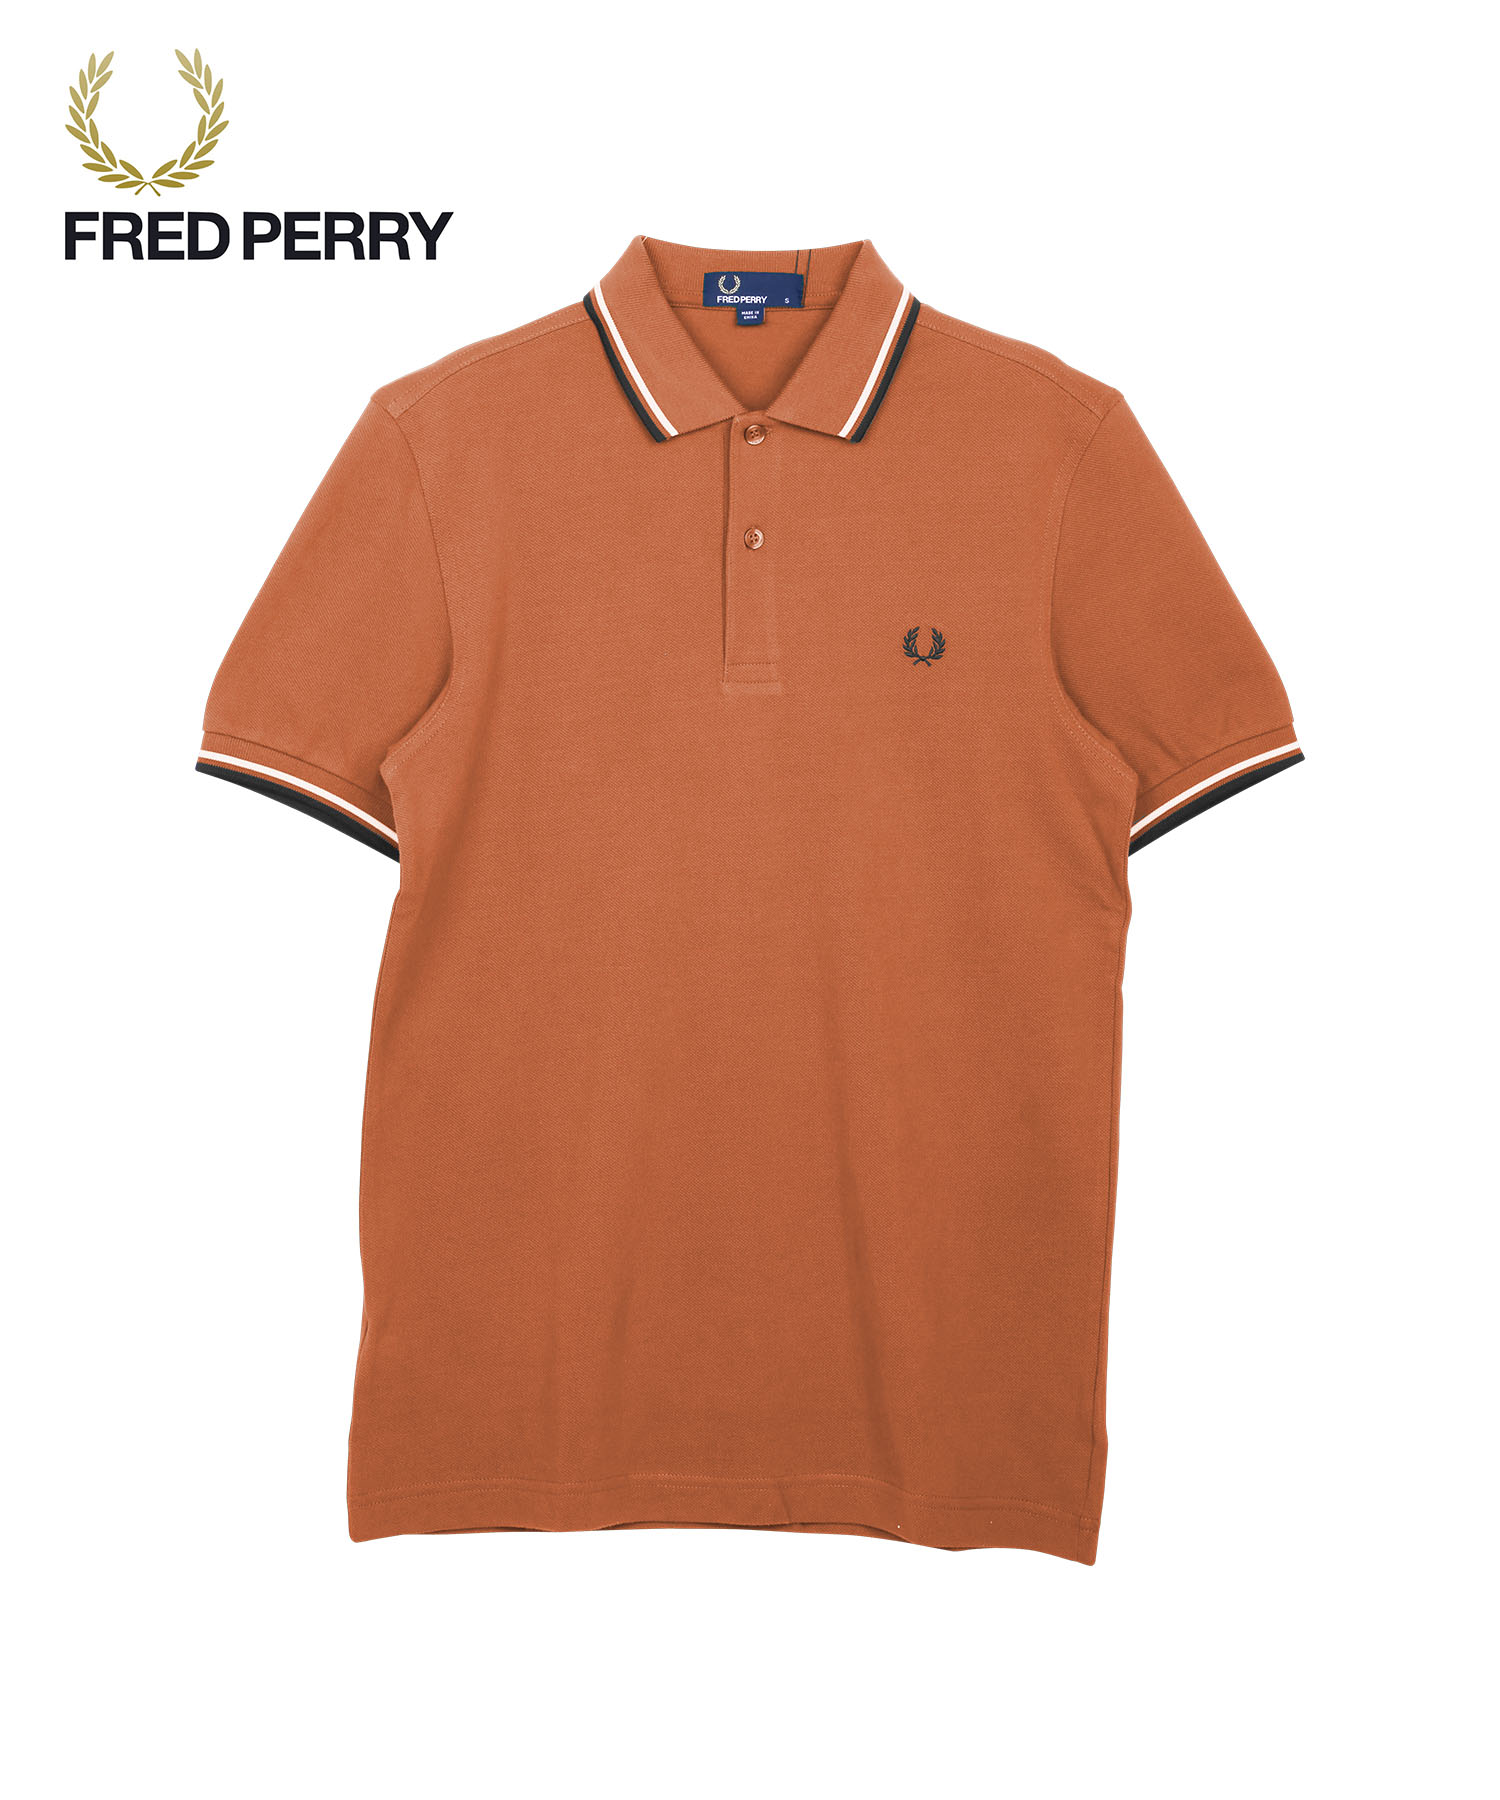 フレッドペリー FRED PERRY ポロシャツ メンズ 紳士 綿100% コットン 